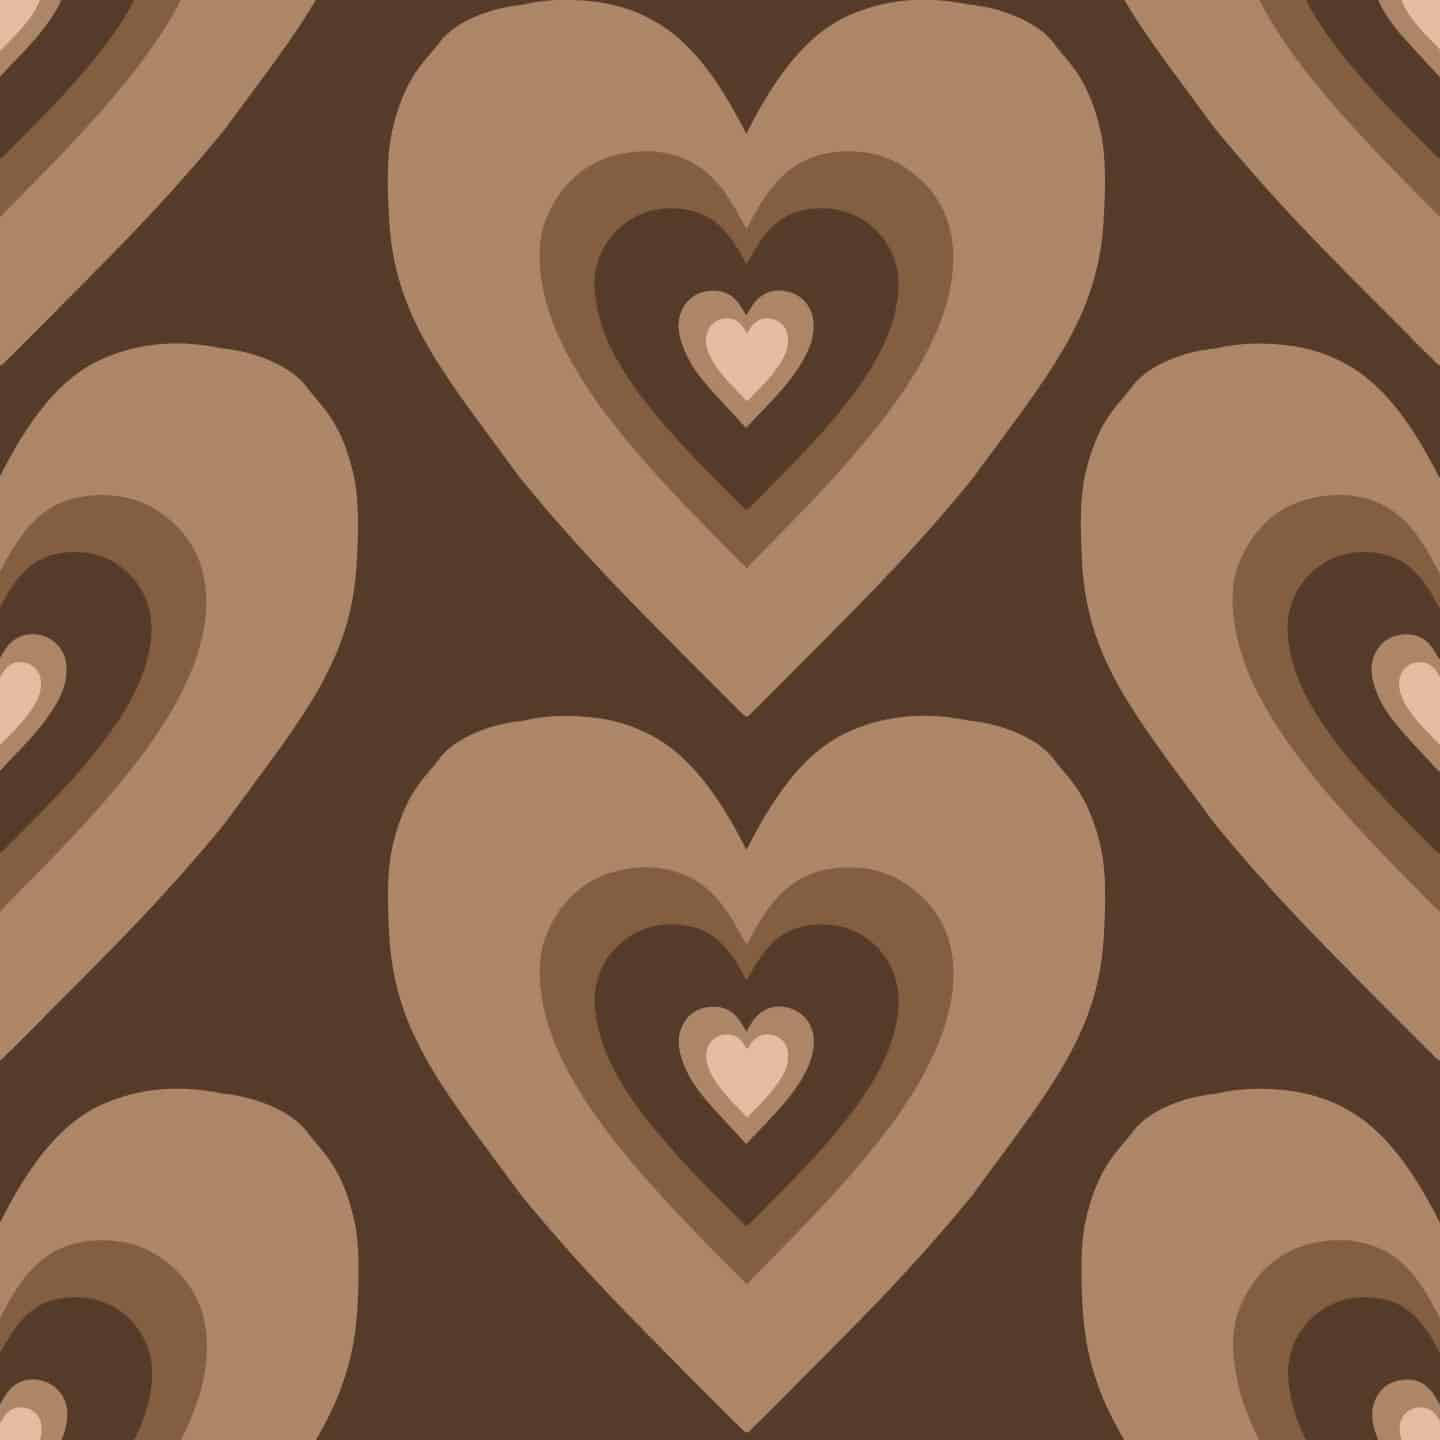 Big Brown Wildflower Hearts Background